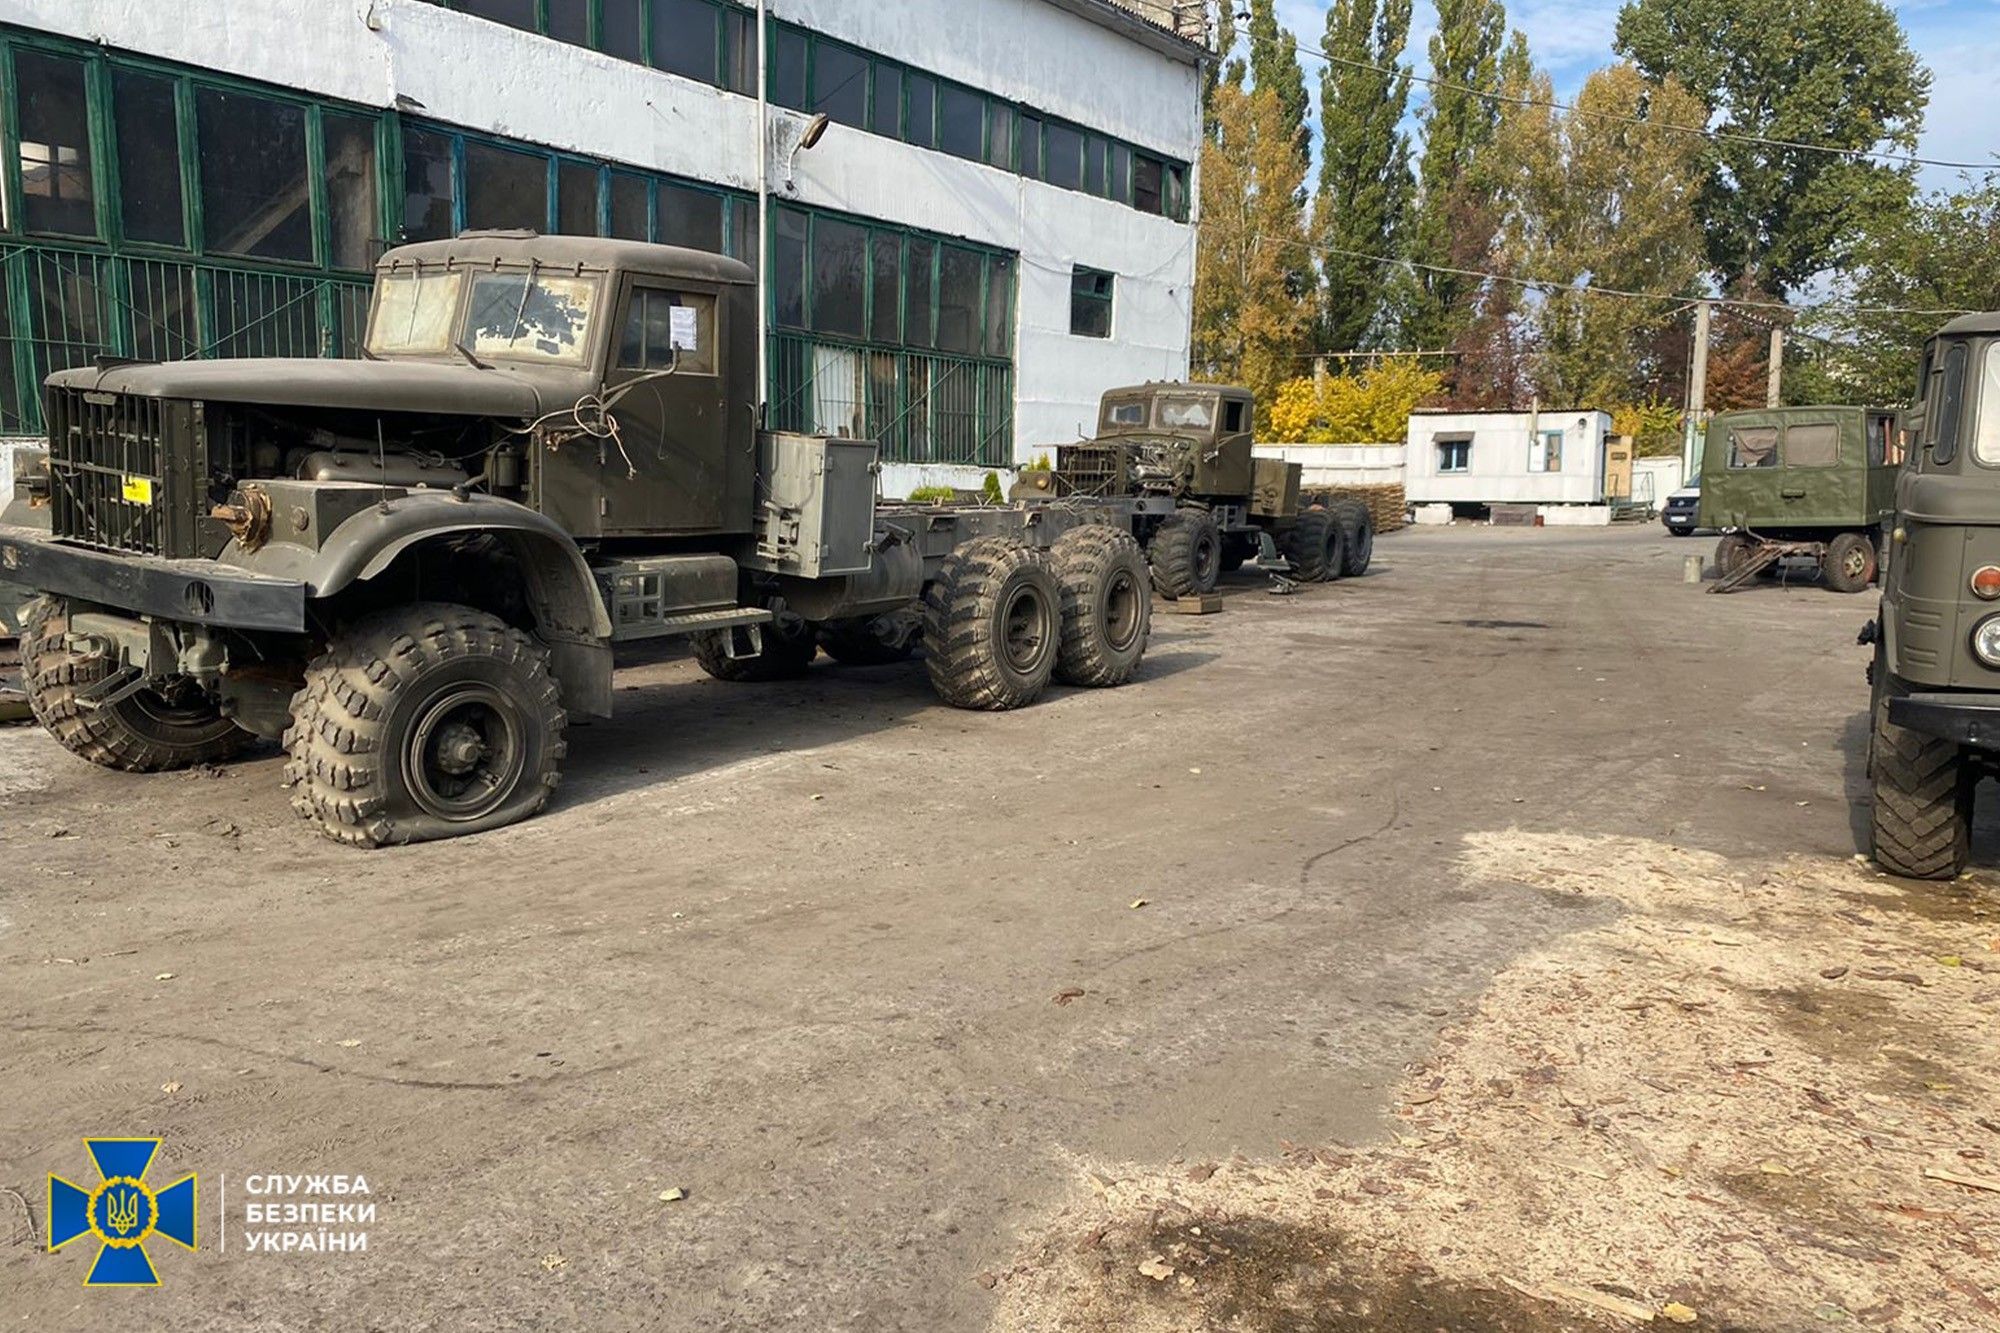 СБУ викрила "бізнесменів" на розкраданні мільйонів гривень, призначених на оборону - Україна новини - 24 Канал